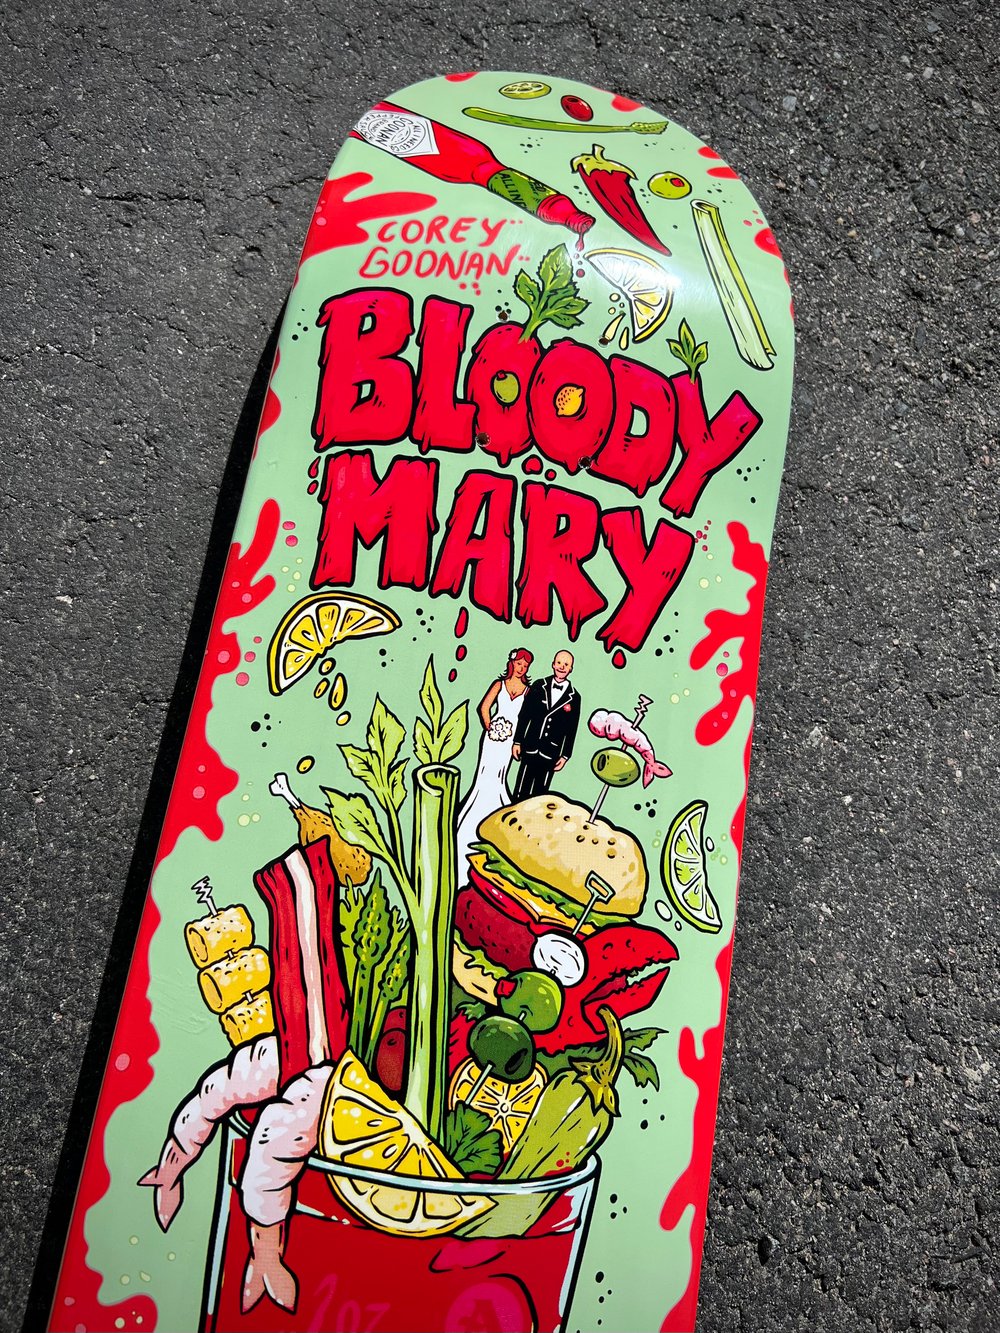 Corey Goonan "Bloody Mary" 